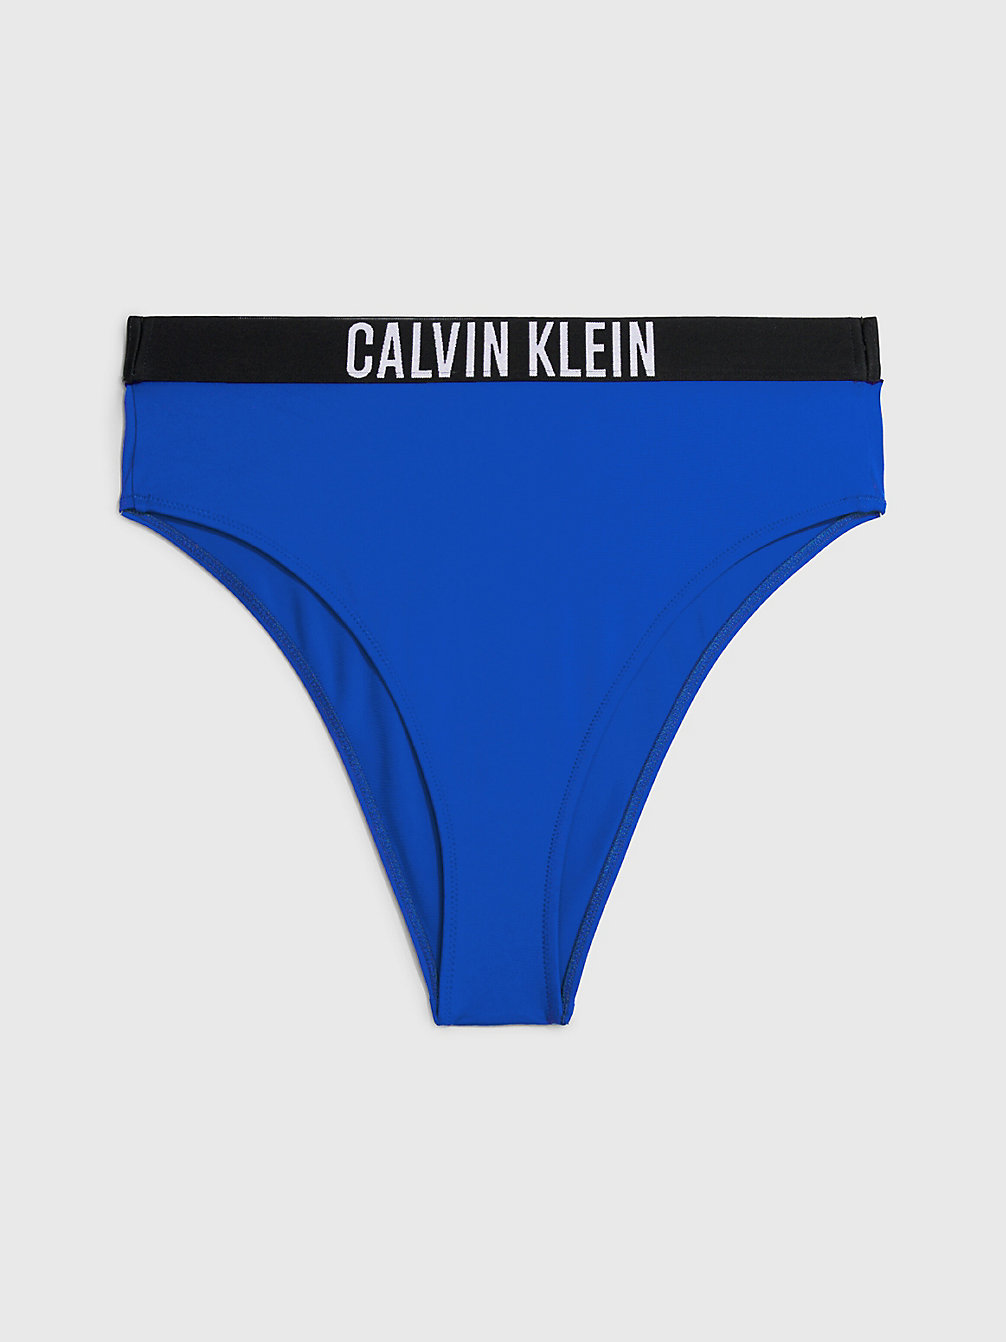 BISTRO BLUE High Waisted Bikini Bottoms - Intense Power undefined women Calvin Klein